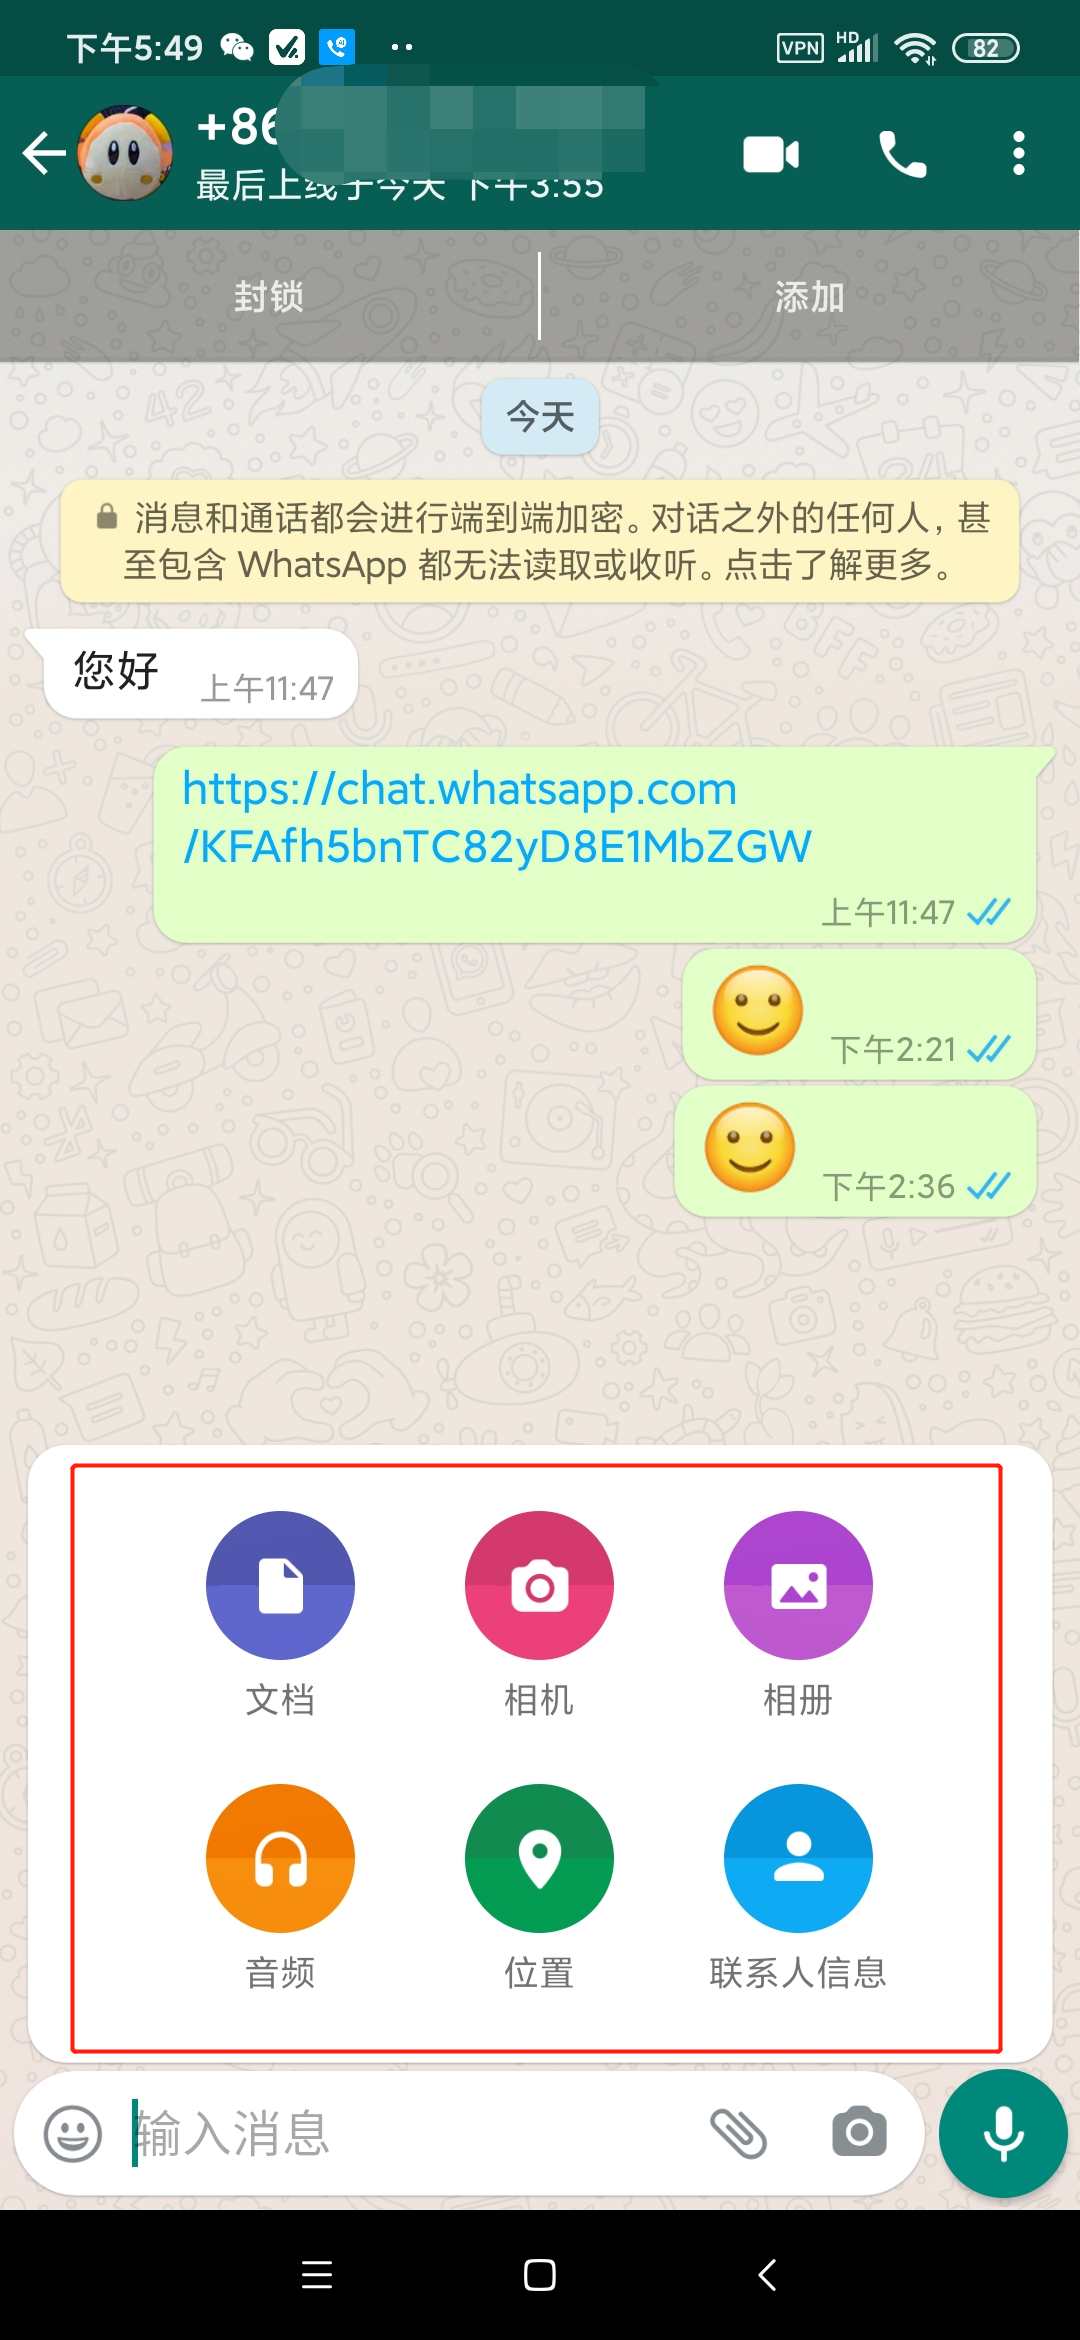 关于whatsapp这个软件中国可以用吗?的信息